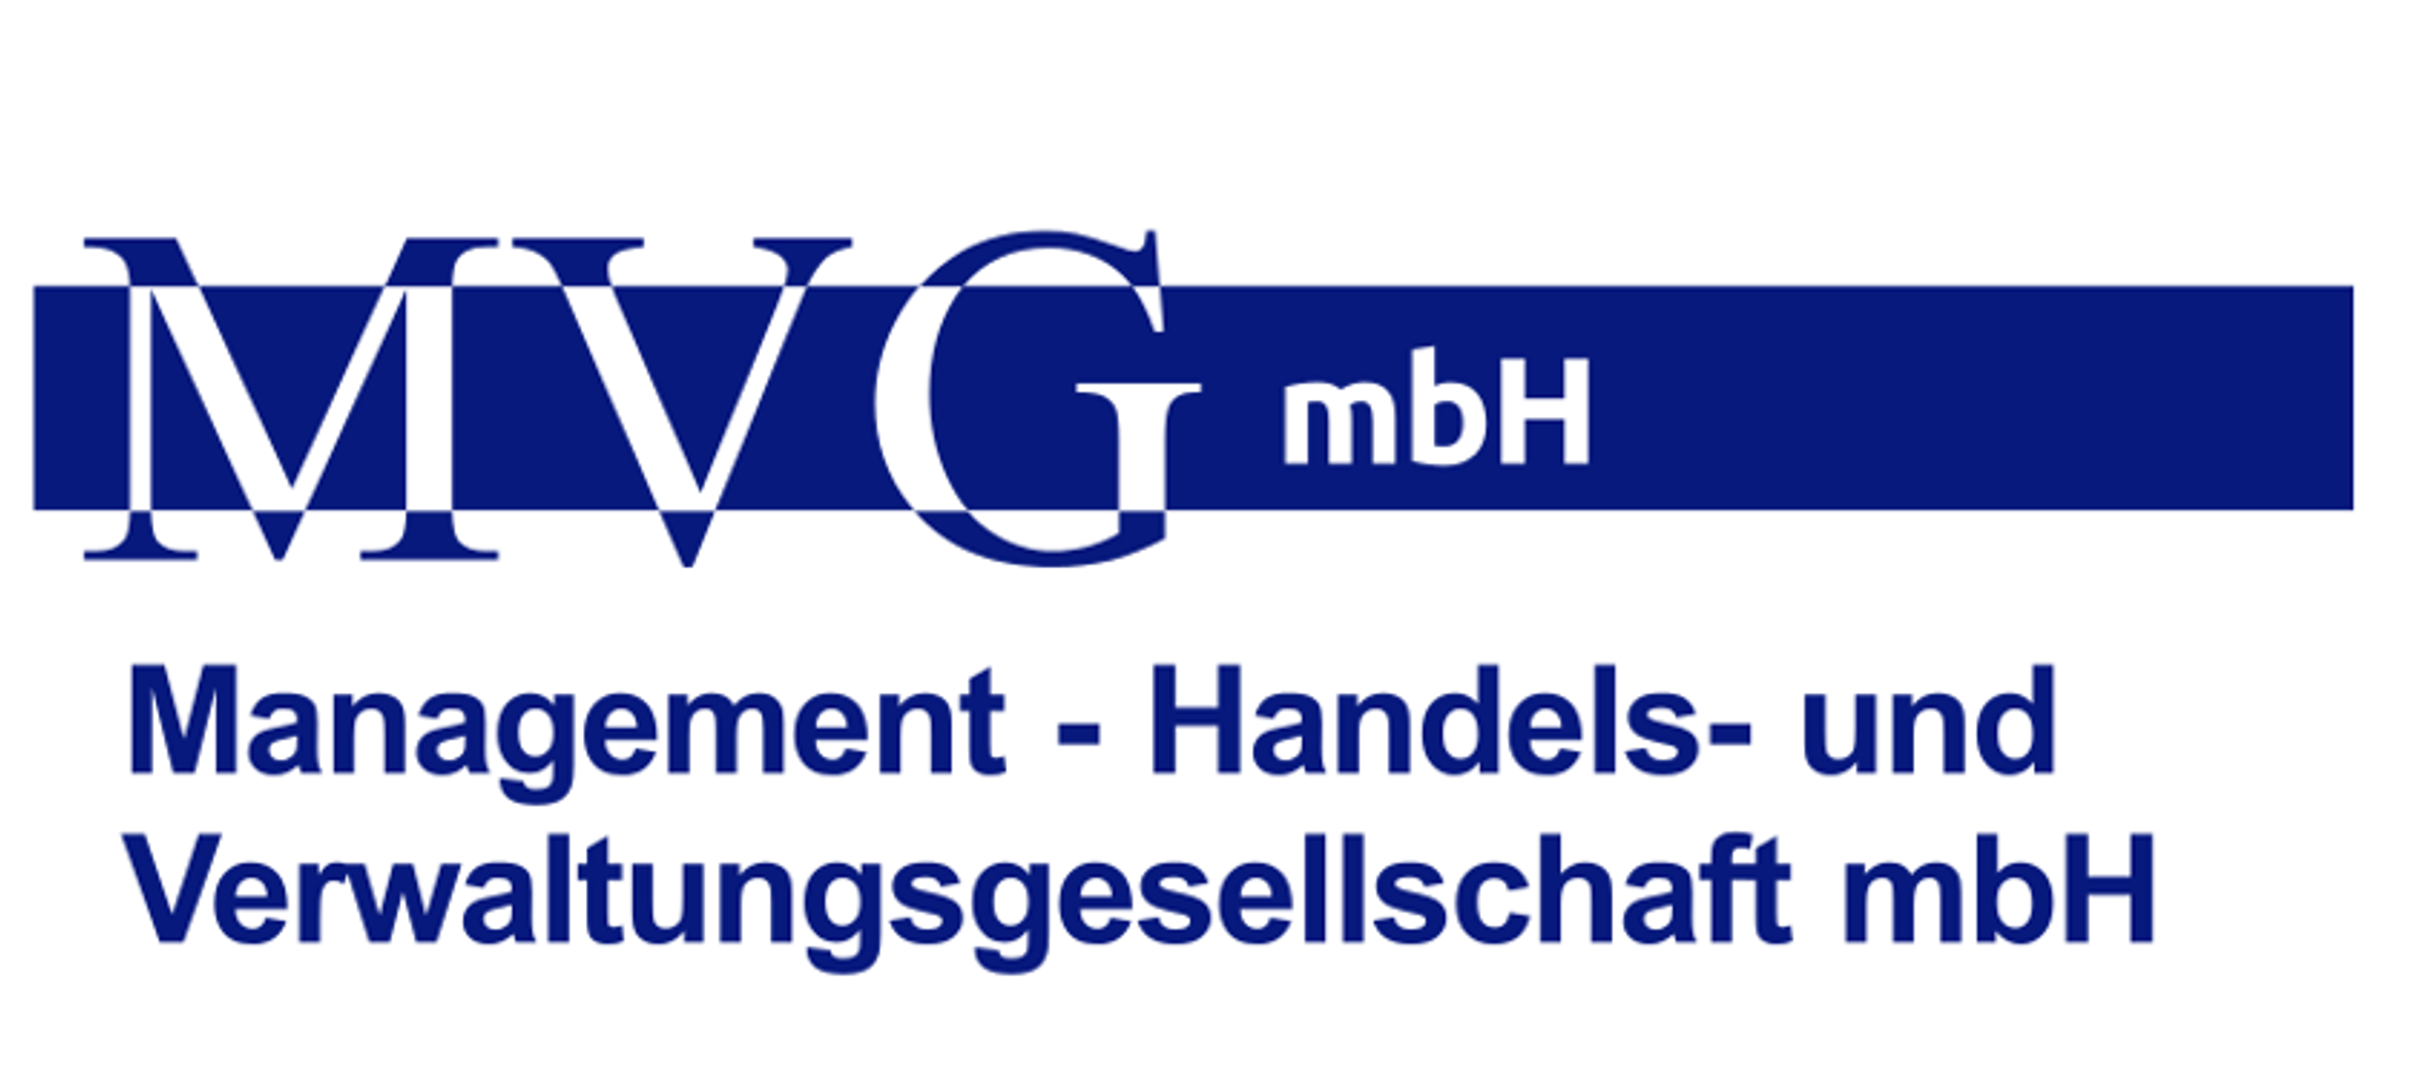 MVG - Management Handels- & Verwaltungsgesellschaft mbH